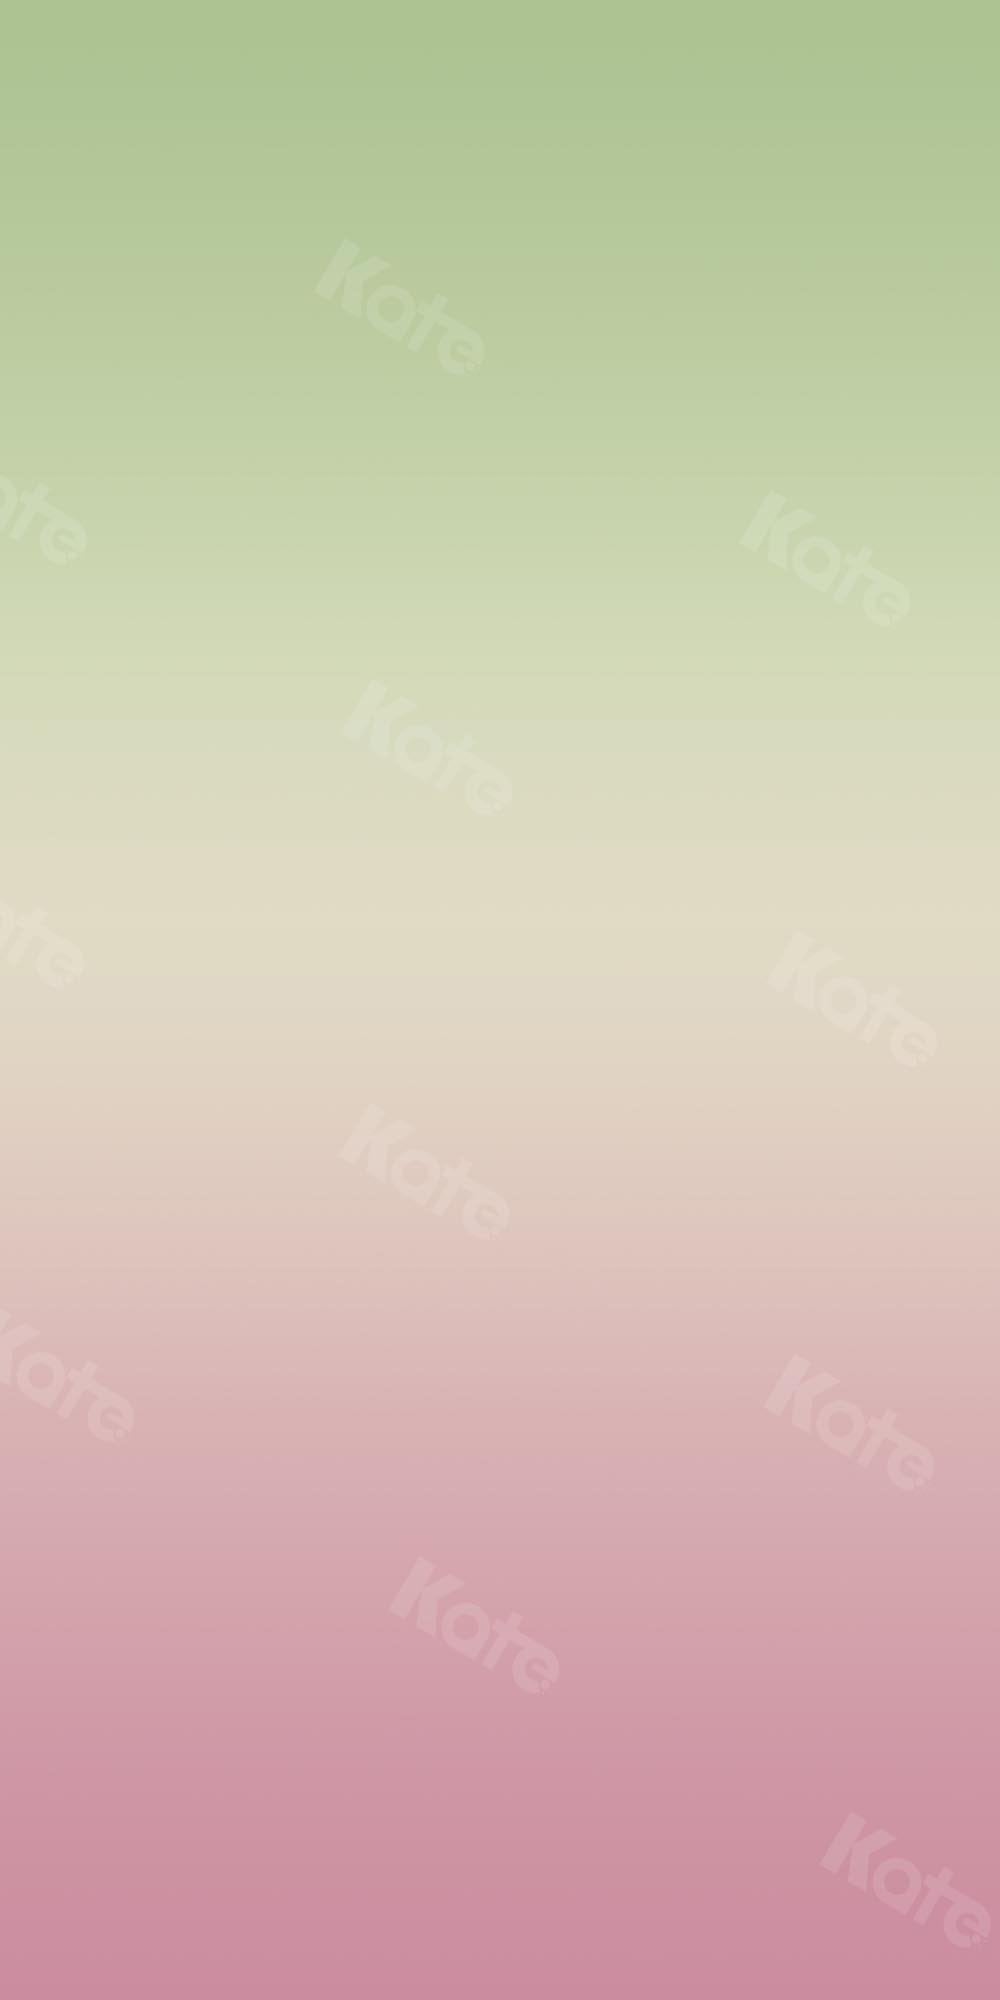 Kate Abstrakter Farbverlauf Grün bis Rosa Hintergrund Ombre